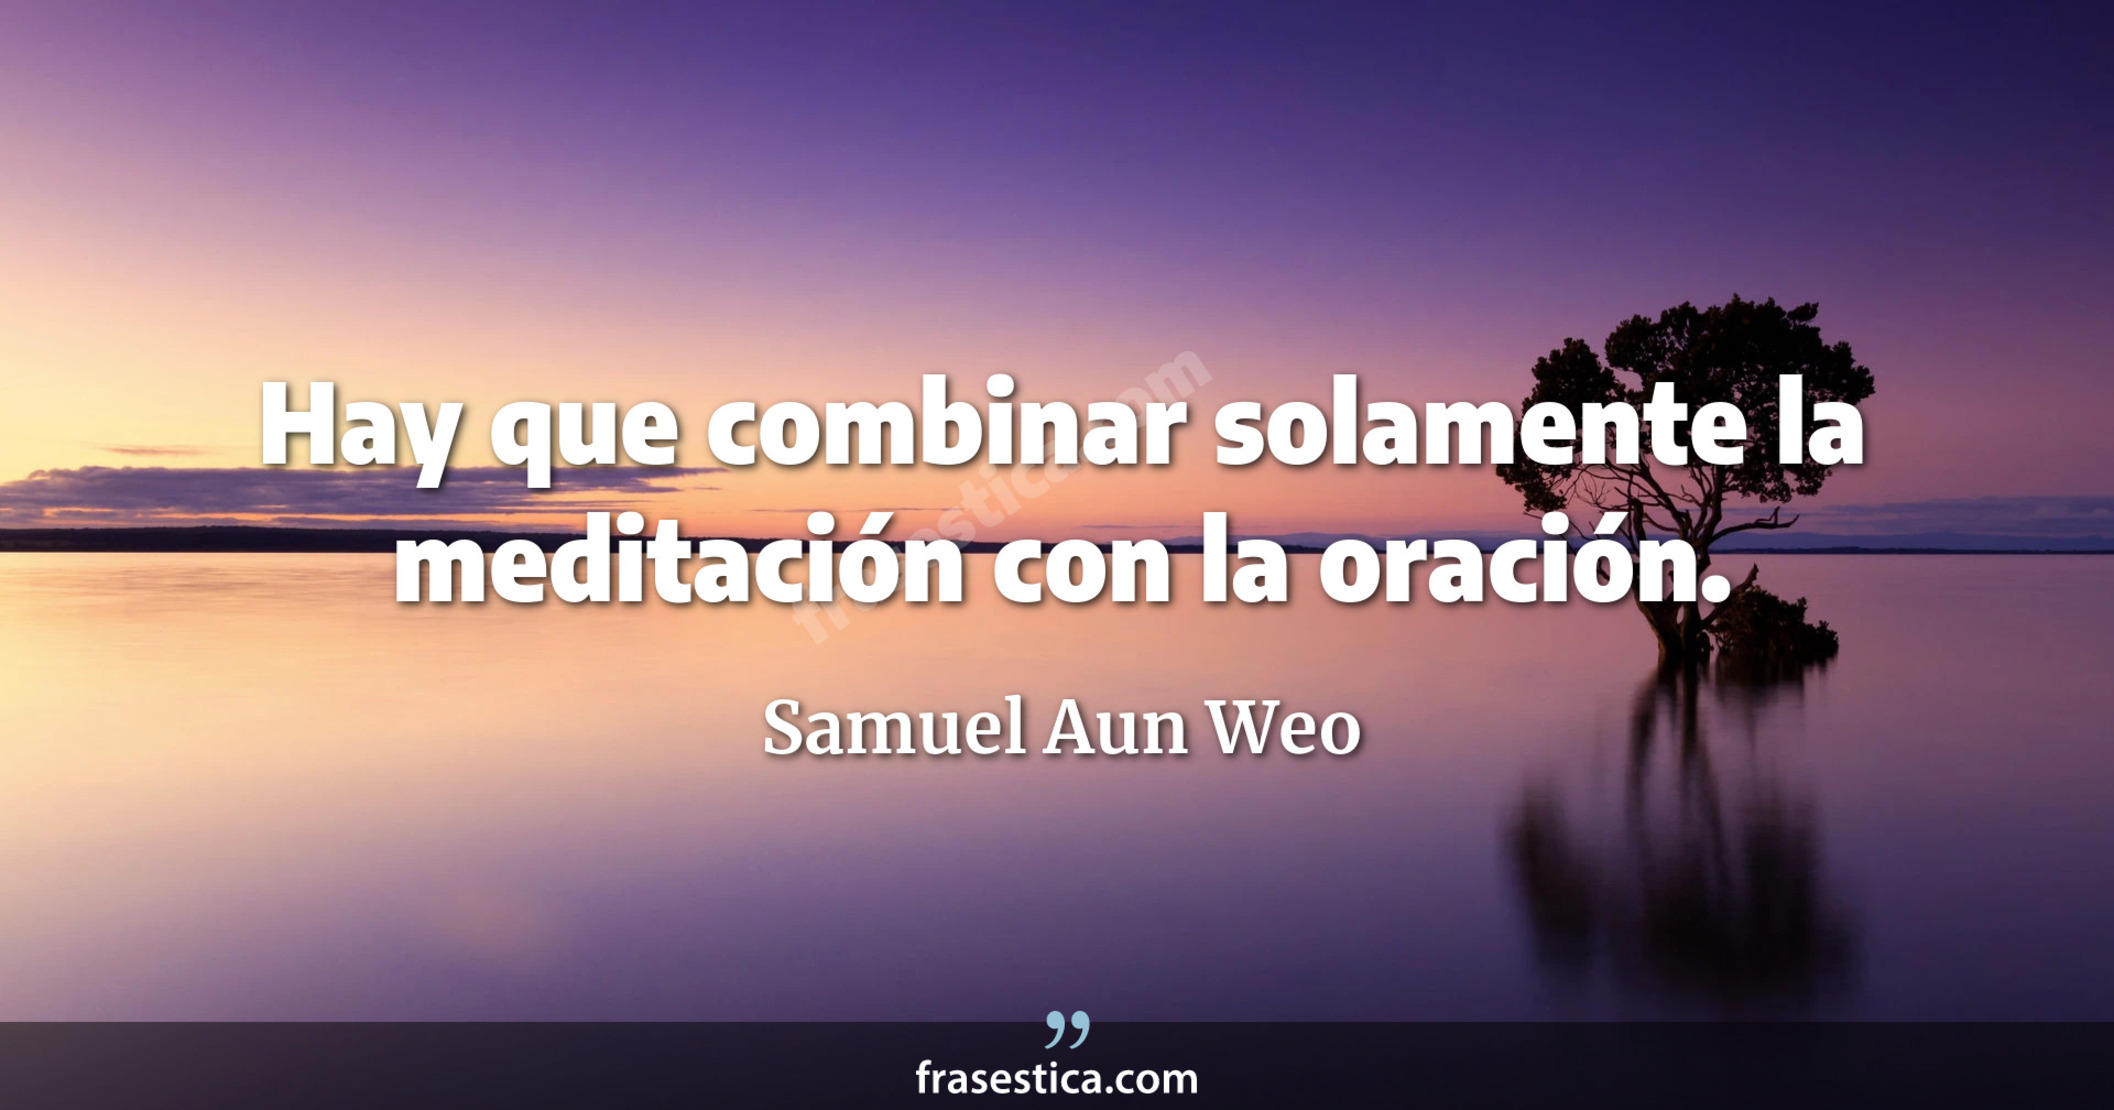 Hay que combinar solamente la meditación con la oración. - Samuel Aun Weo